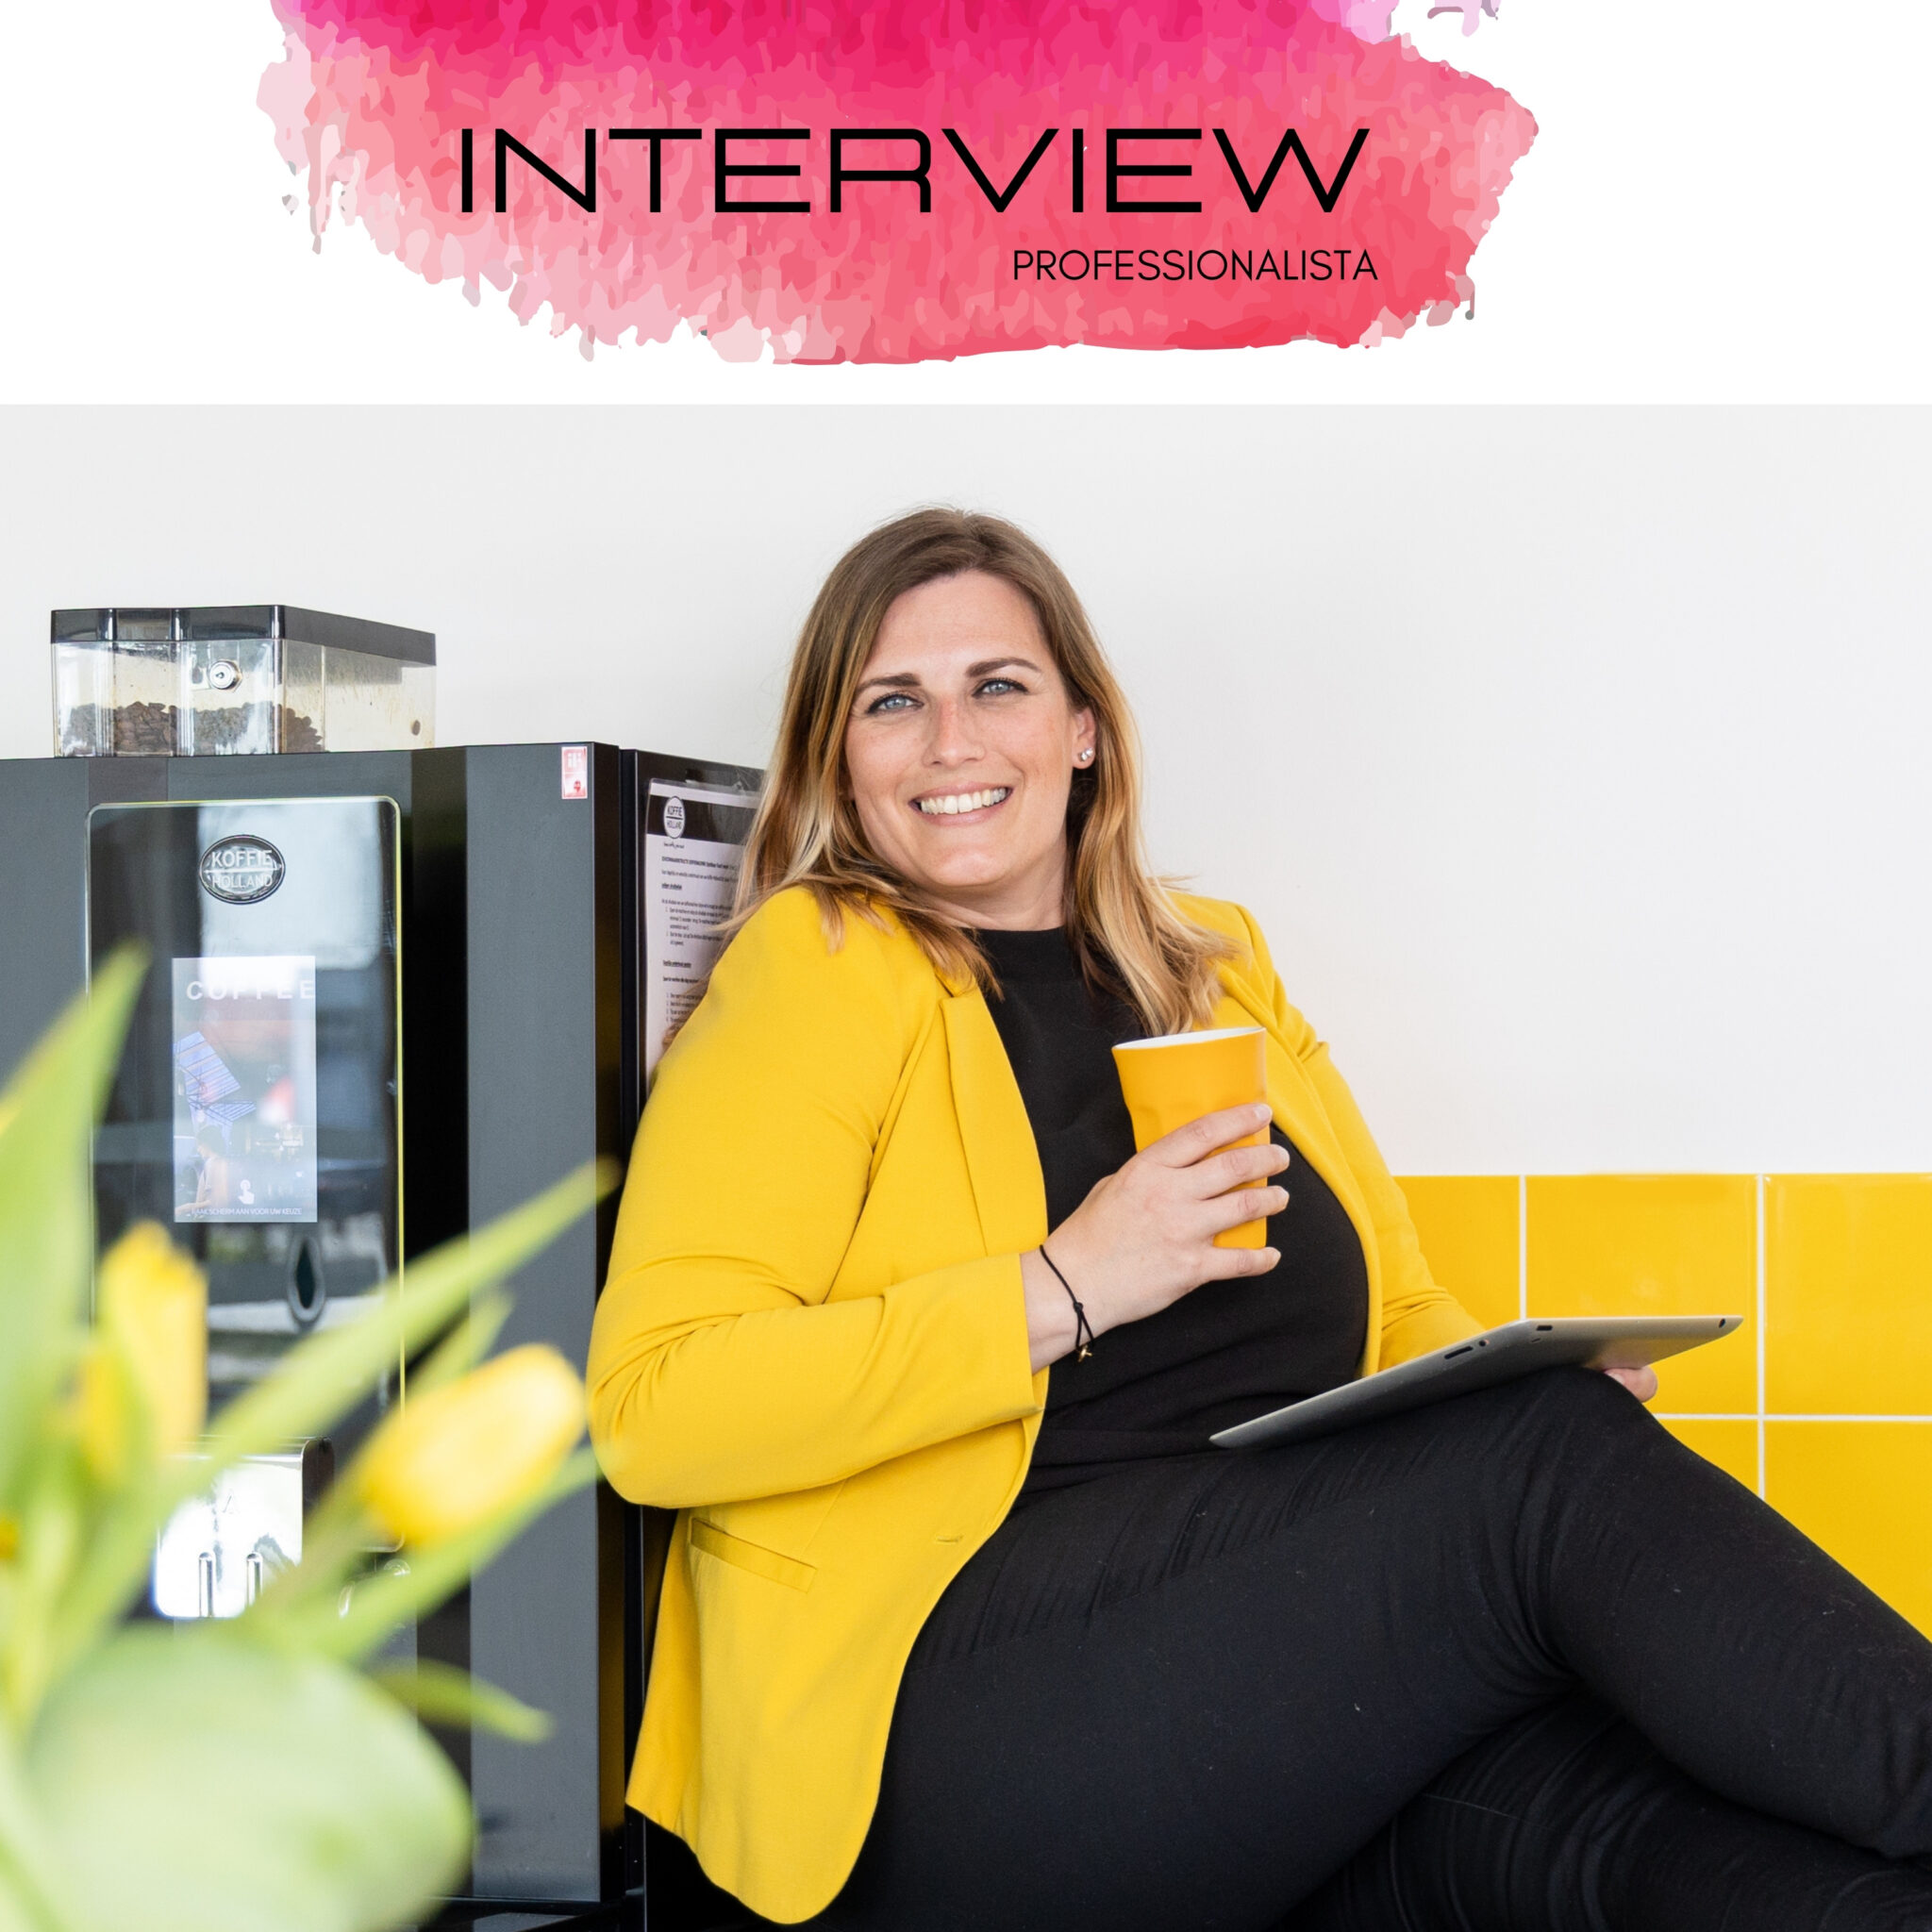 Interview Professionalista Alexandra Levendig-Huijgens